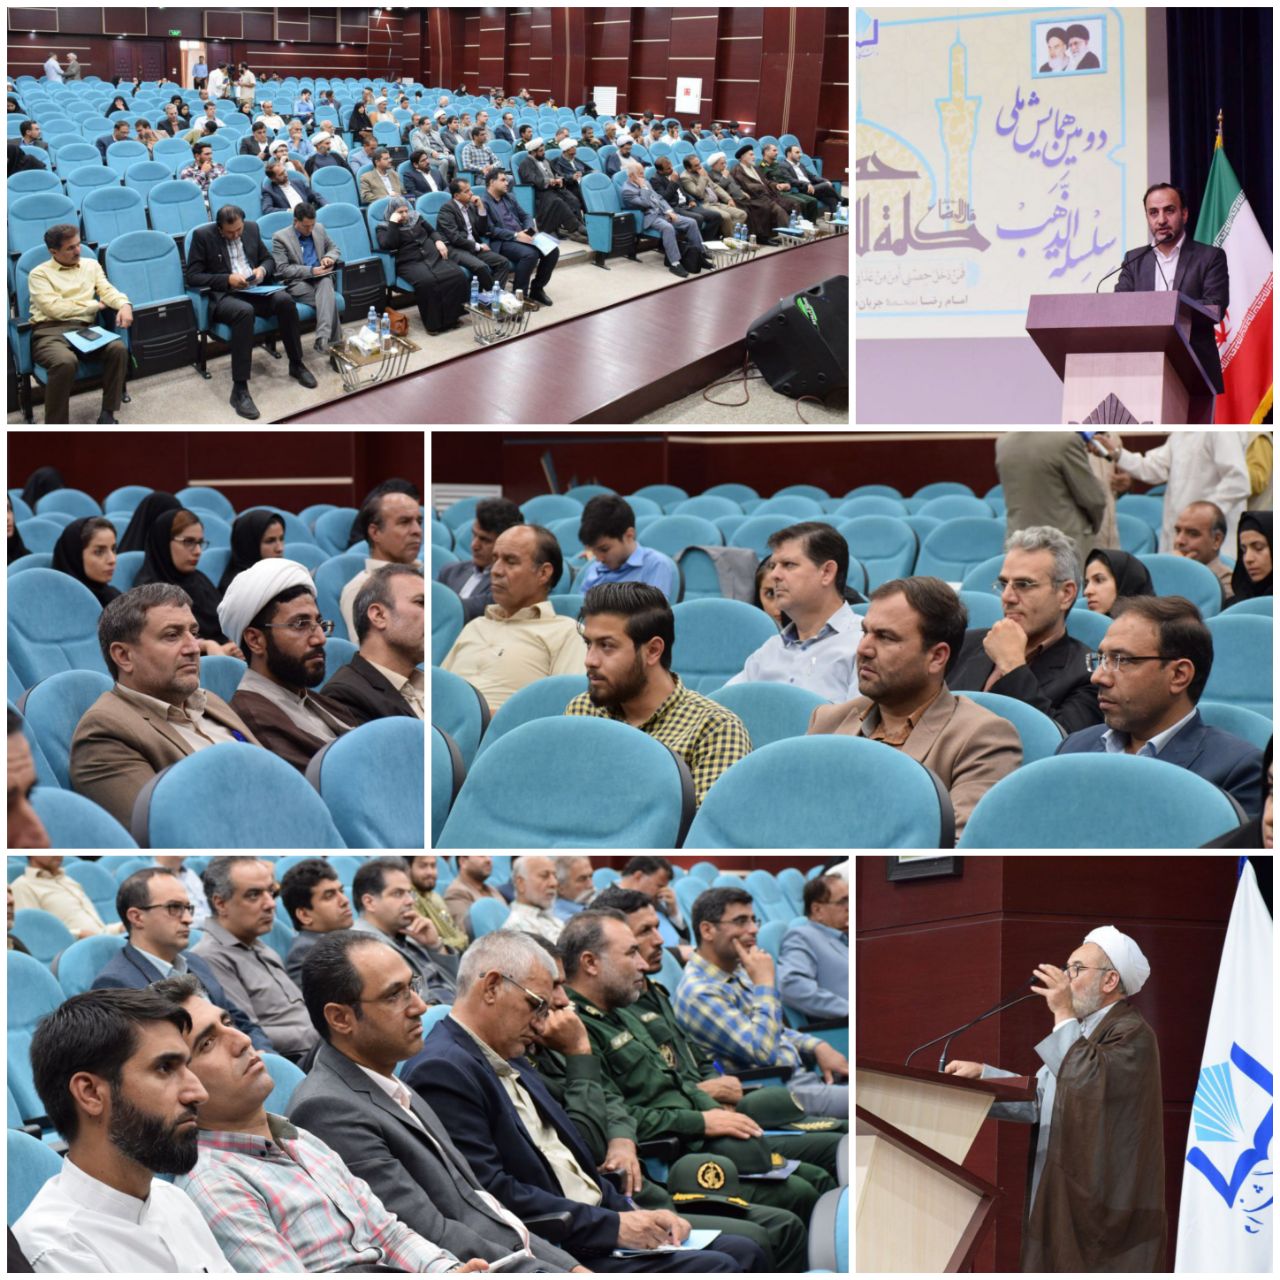 حضور اعضای شورای اسلامی شهر در همایش علمی سلسله الذهب